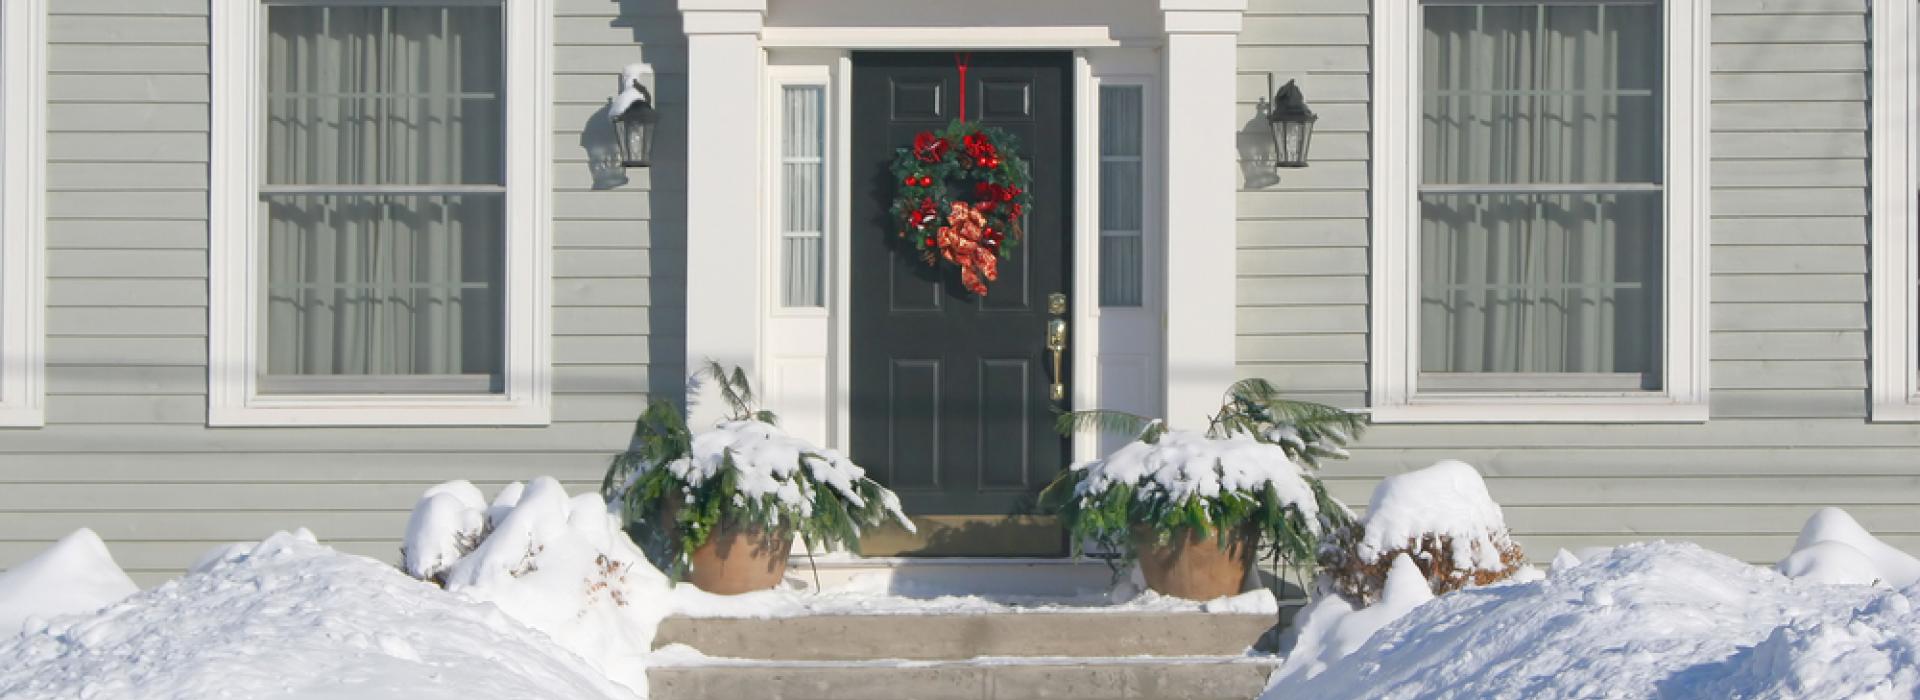 Snowy front door